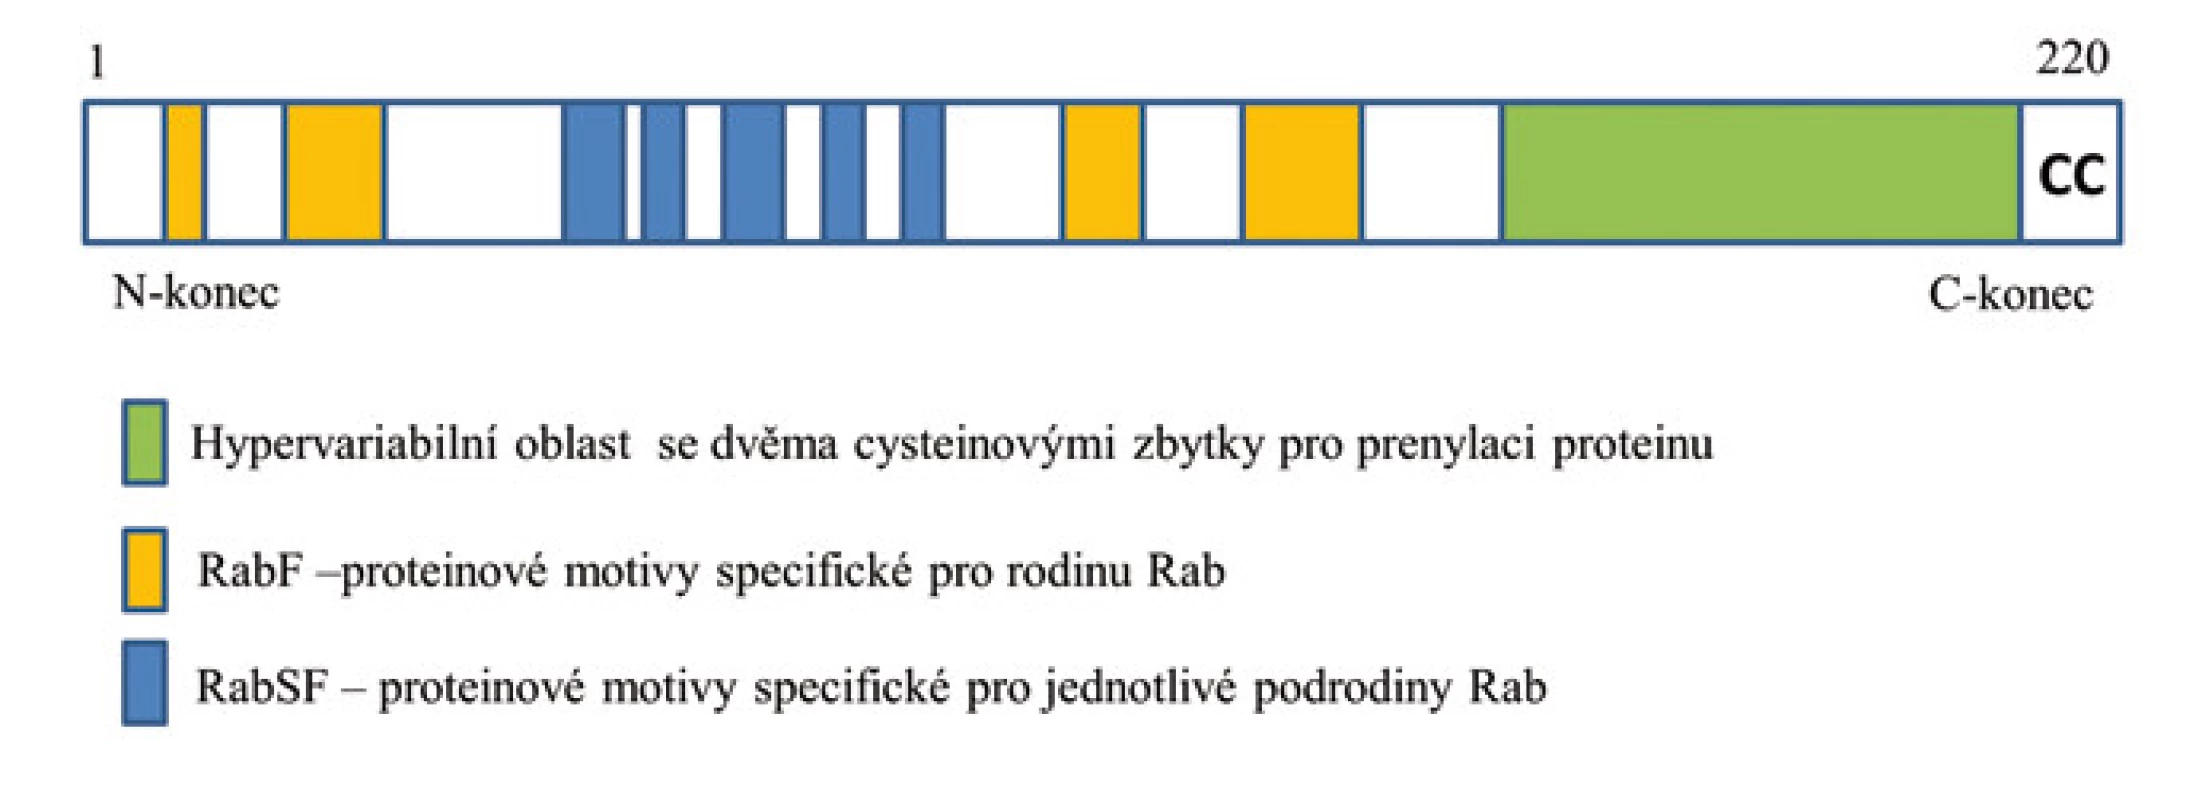 Schéma struktury proteinu Rab.
Struktura proteinu Rab s označenými motivy specifickými pro celou rodinu Rab (RabF) a pro jednotlivé podrodiny Rab (RabSF), které se podílejí na protein-proteinových interakcích. Na C-konci proteinu je hypervariabilní doména s dicysteinylovým prenylačním signálem (CC).